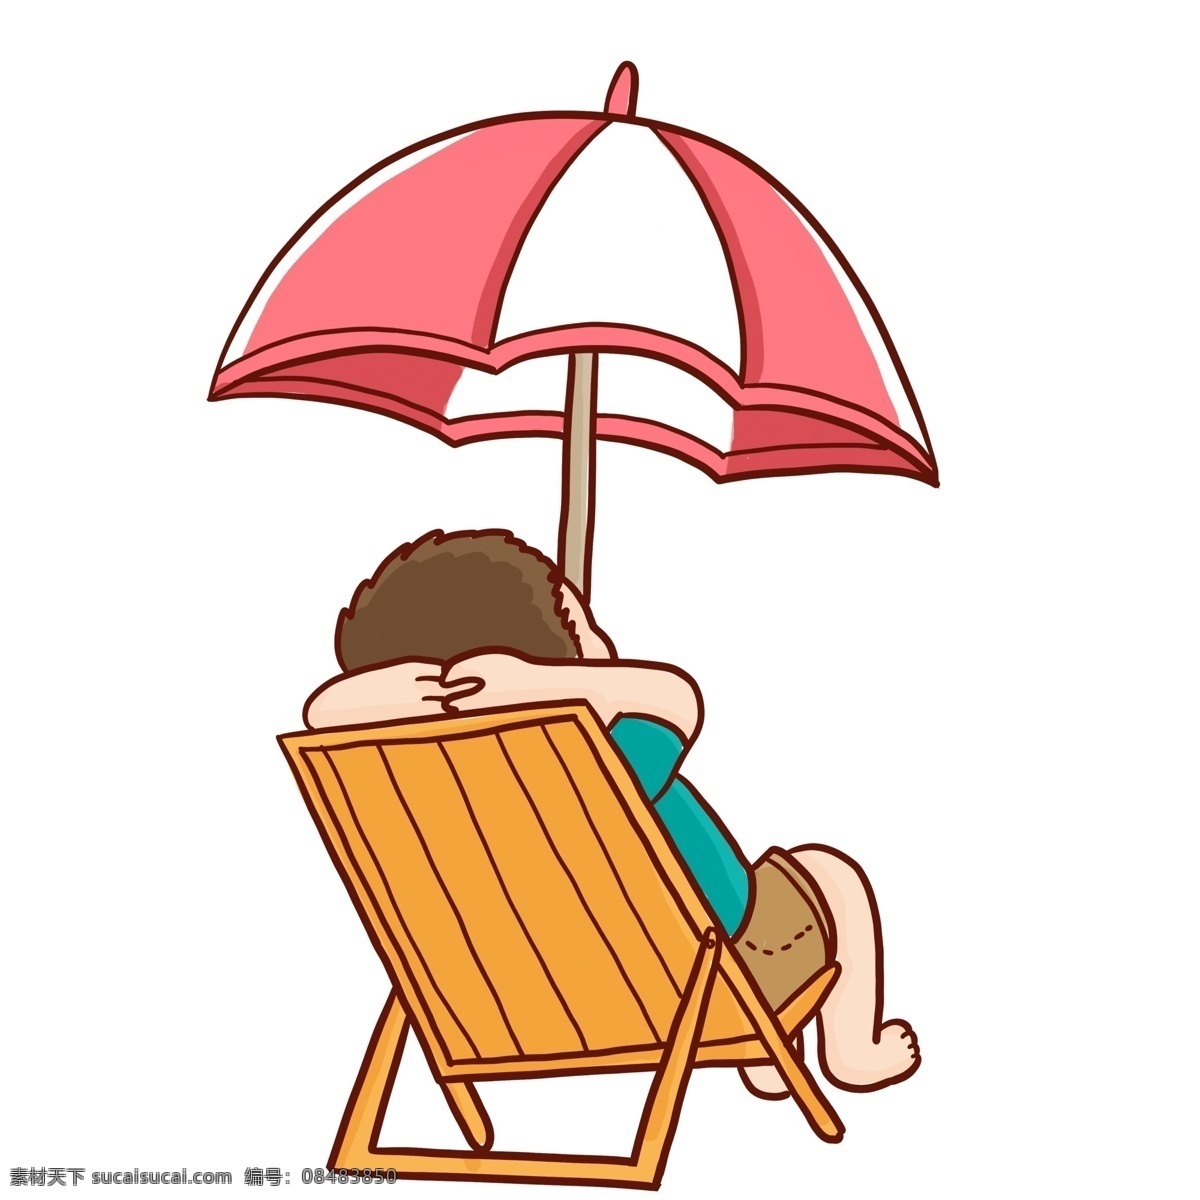 彩绘 沙滩 度假 男孩 漫画风 沙滩度假 遮阳伞 躺椅 日光浴 背影 插画